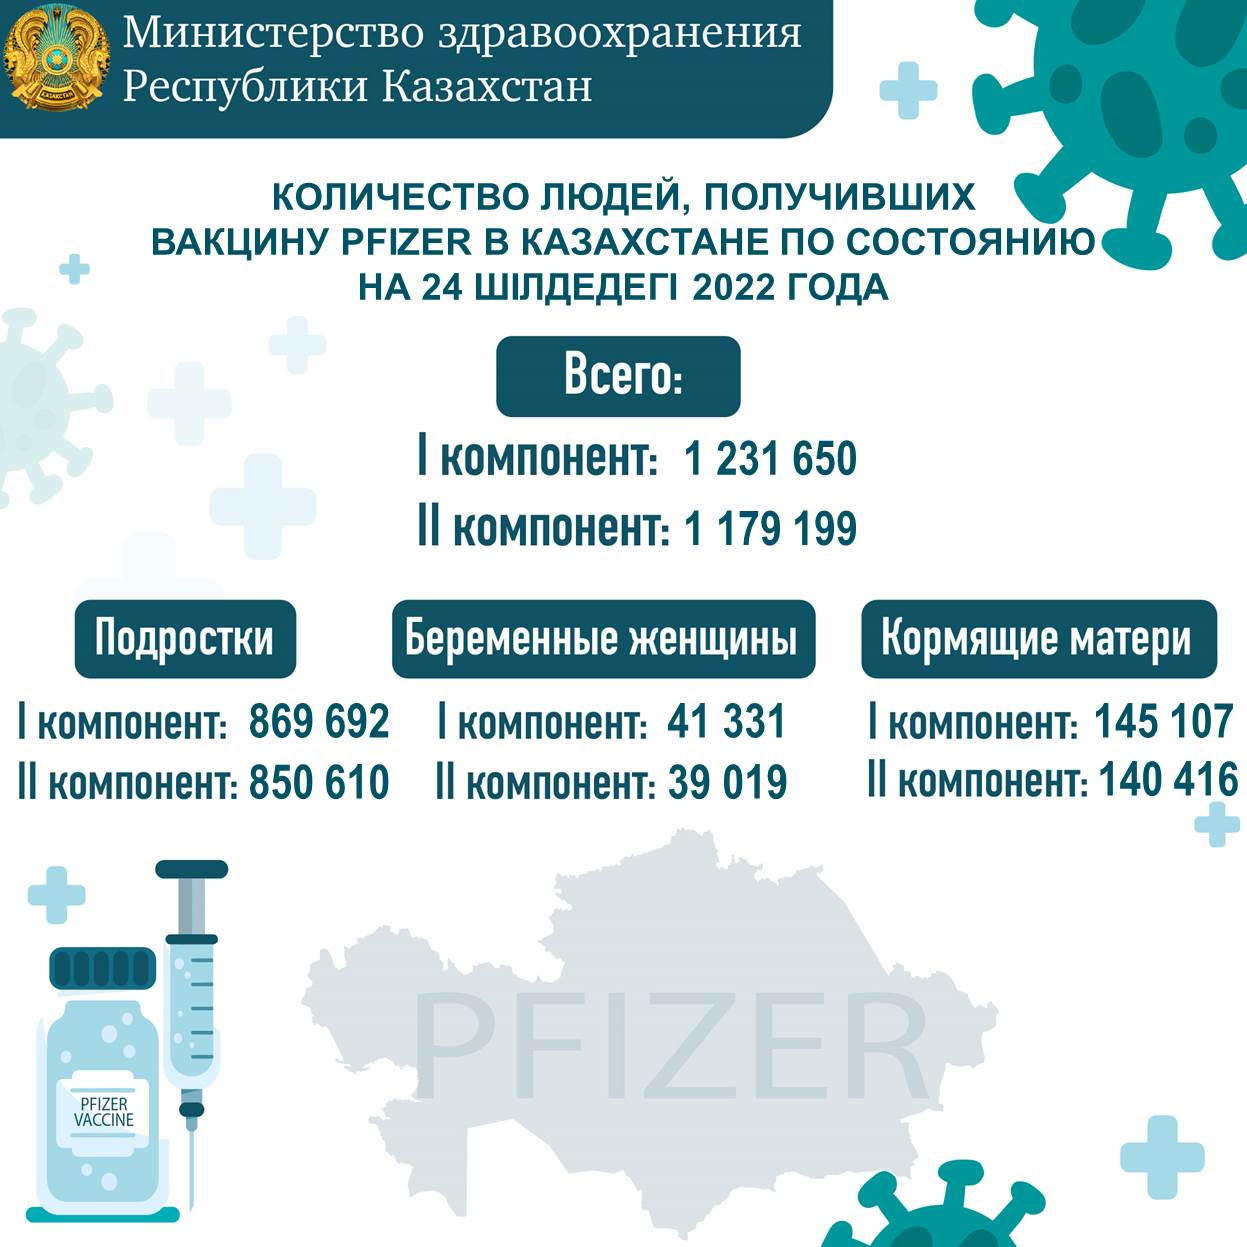 Количество людей, получивших вакцину Рfizer в Казахстане по состоянию на 24.07.2022 года